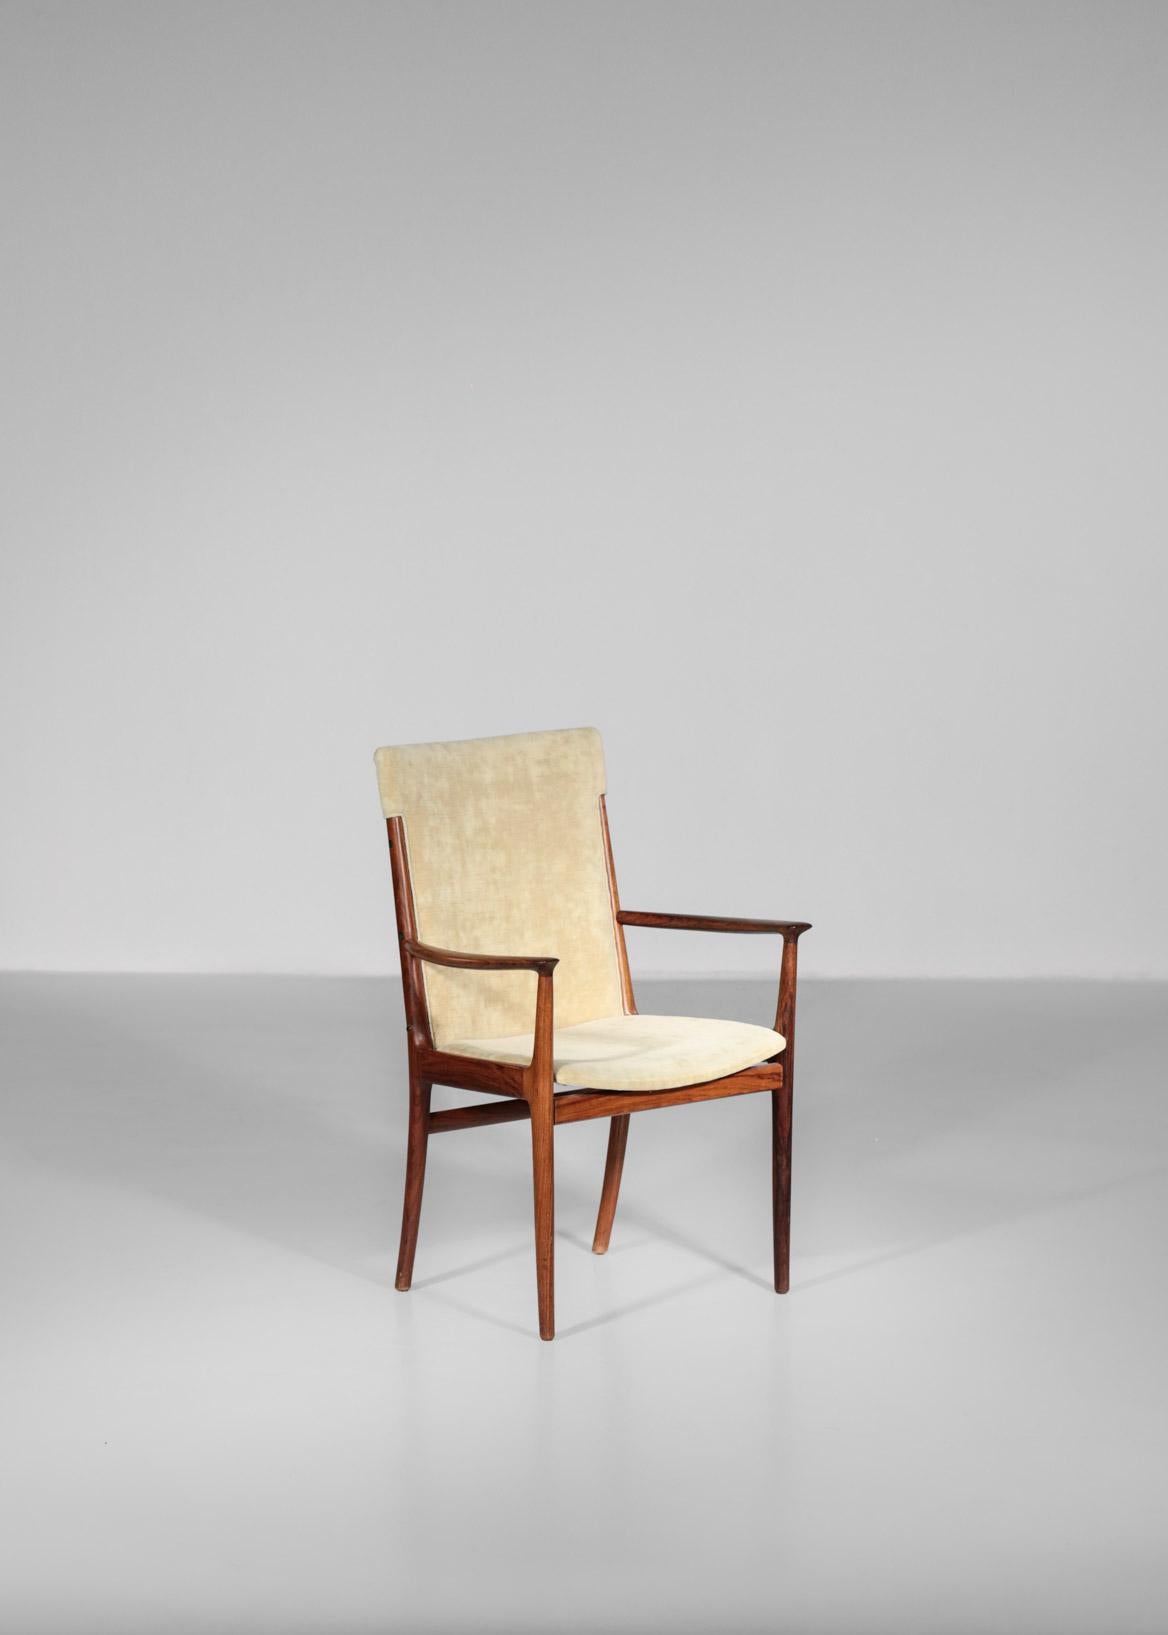 Rare Danish armchair by designer Harry in rosewood. Seat in cream fabric. Soren Willadsen Mobelfabrik.